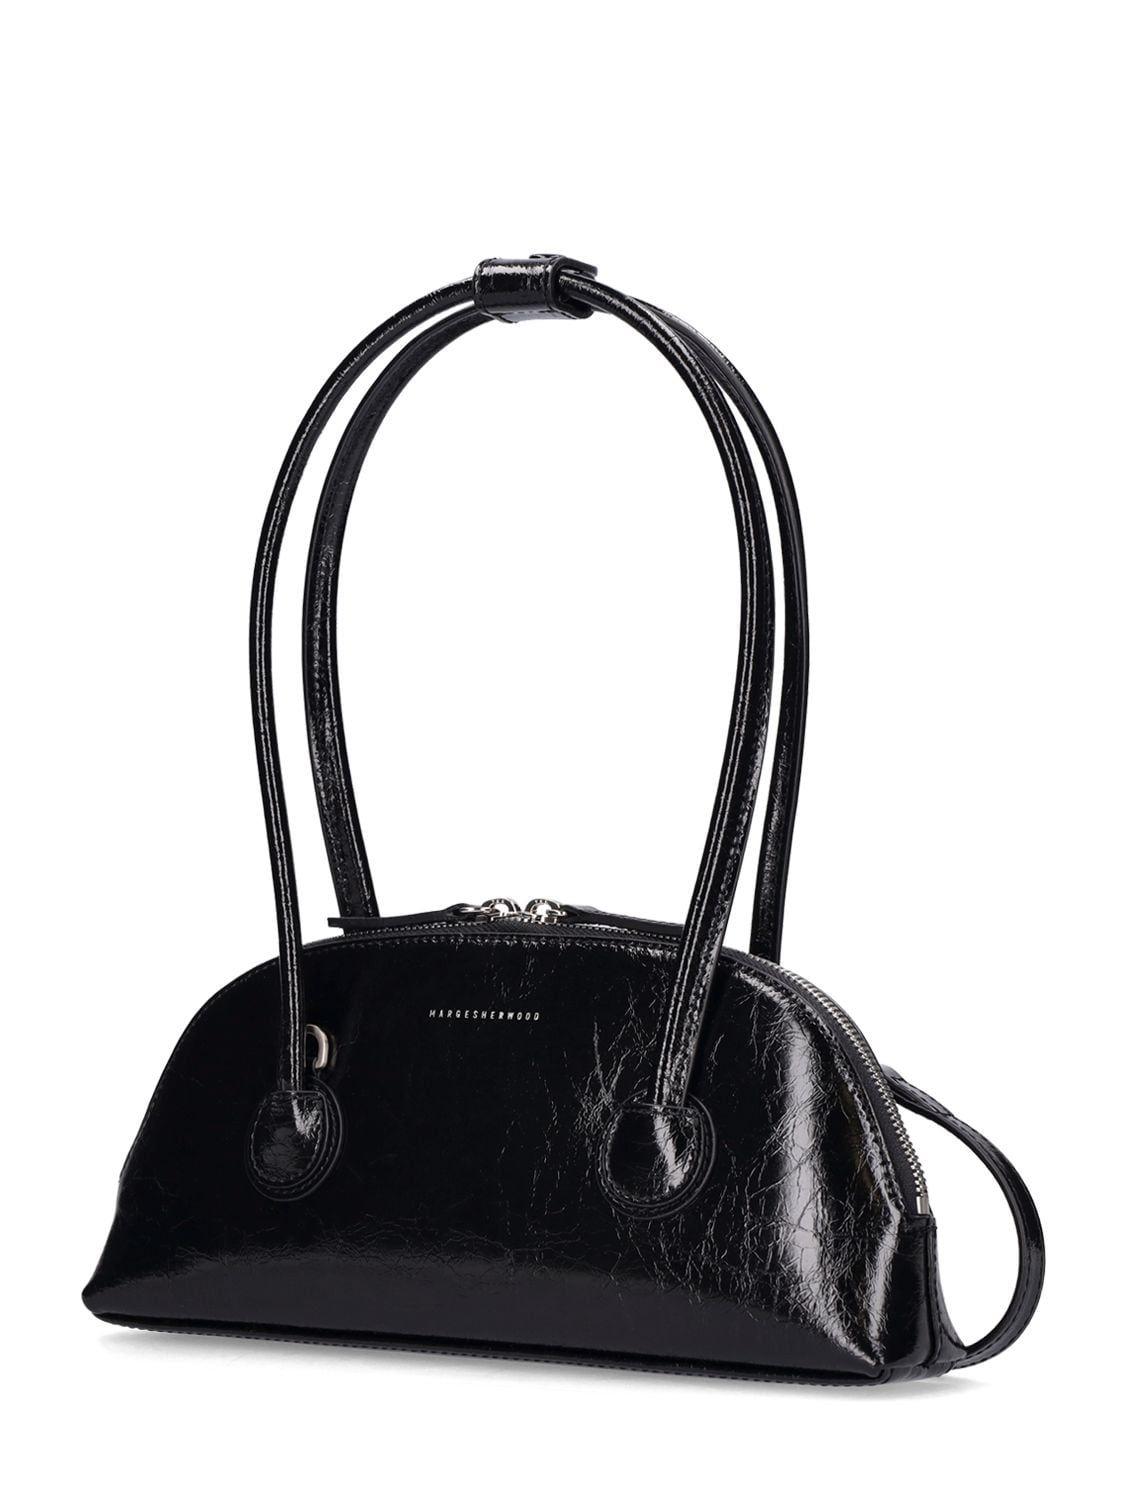 Bessette logo-print shoulder bag, Marge Sherwood